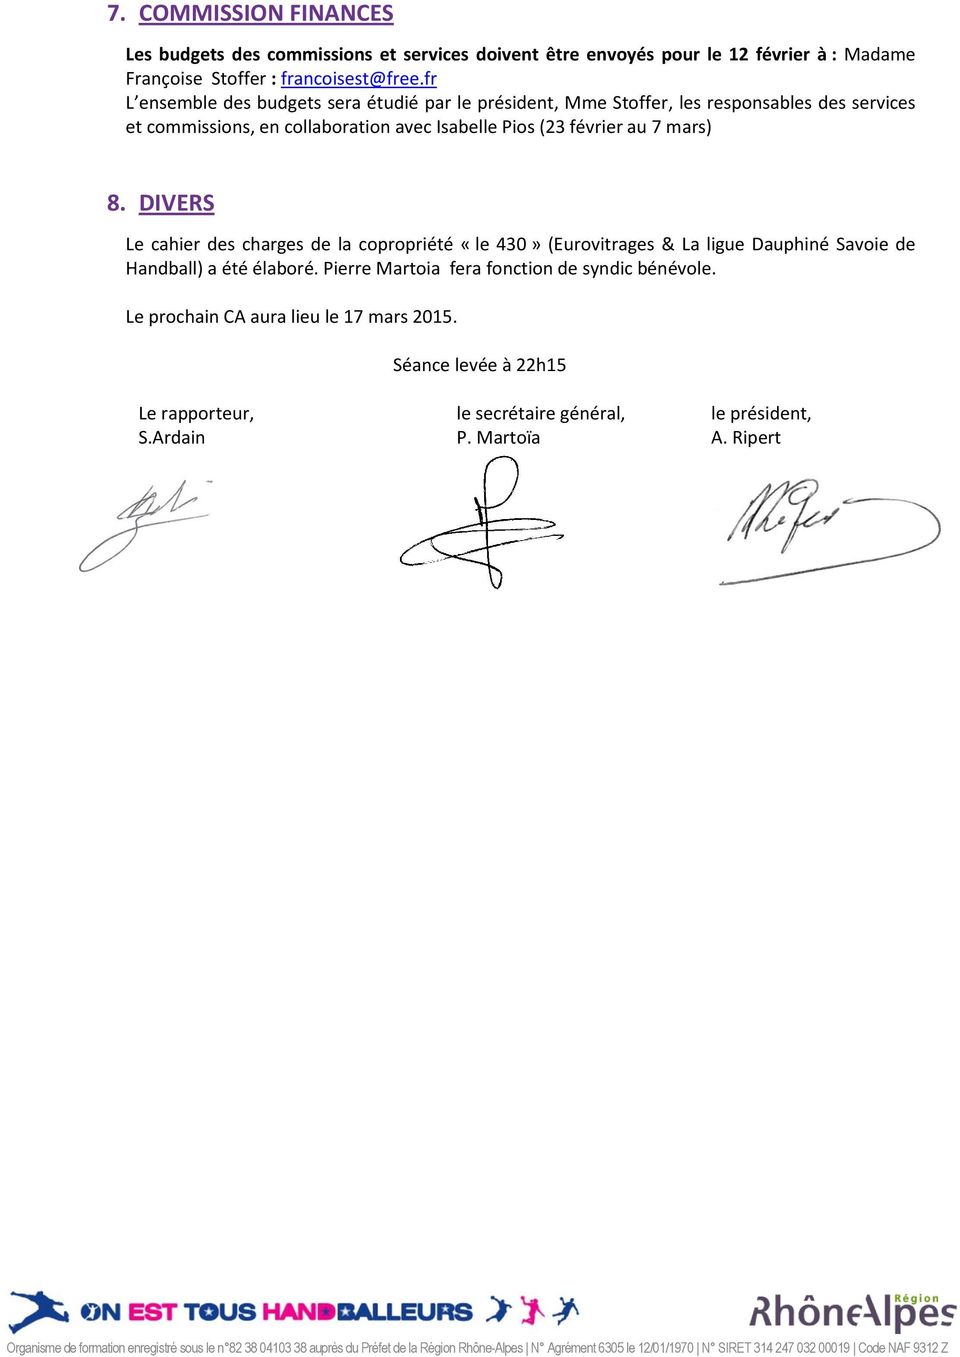 DIVERS Le cahier des charges de la copropriété «le 430» (Eurovitrages & La ligue Dauphiné Savoie de Handball) a été élaboré. Pierre Martoia fera fonction de syndic bénévole.